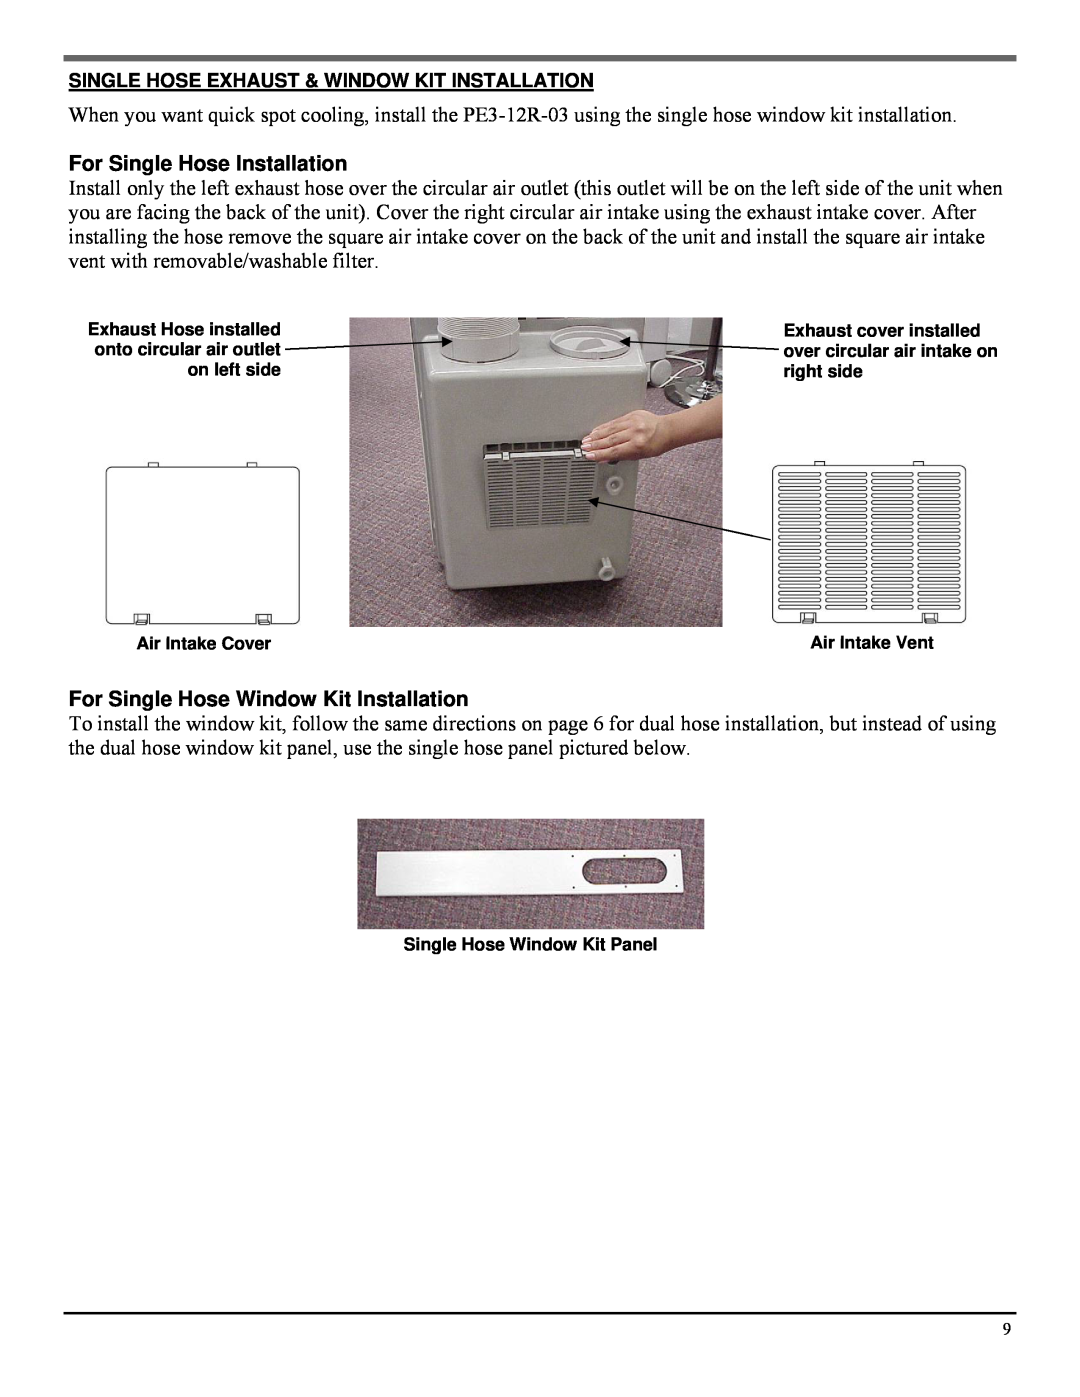 Soleus Air PE3-12R-03 manual For Single Hose Installation, For Single Hose Window Kit Installation 